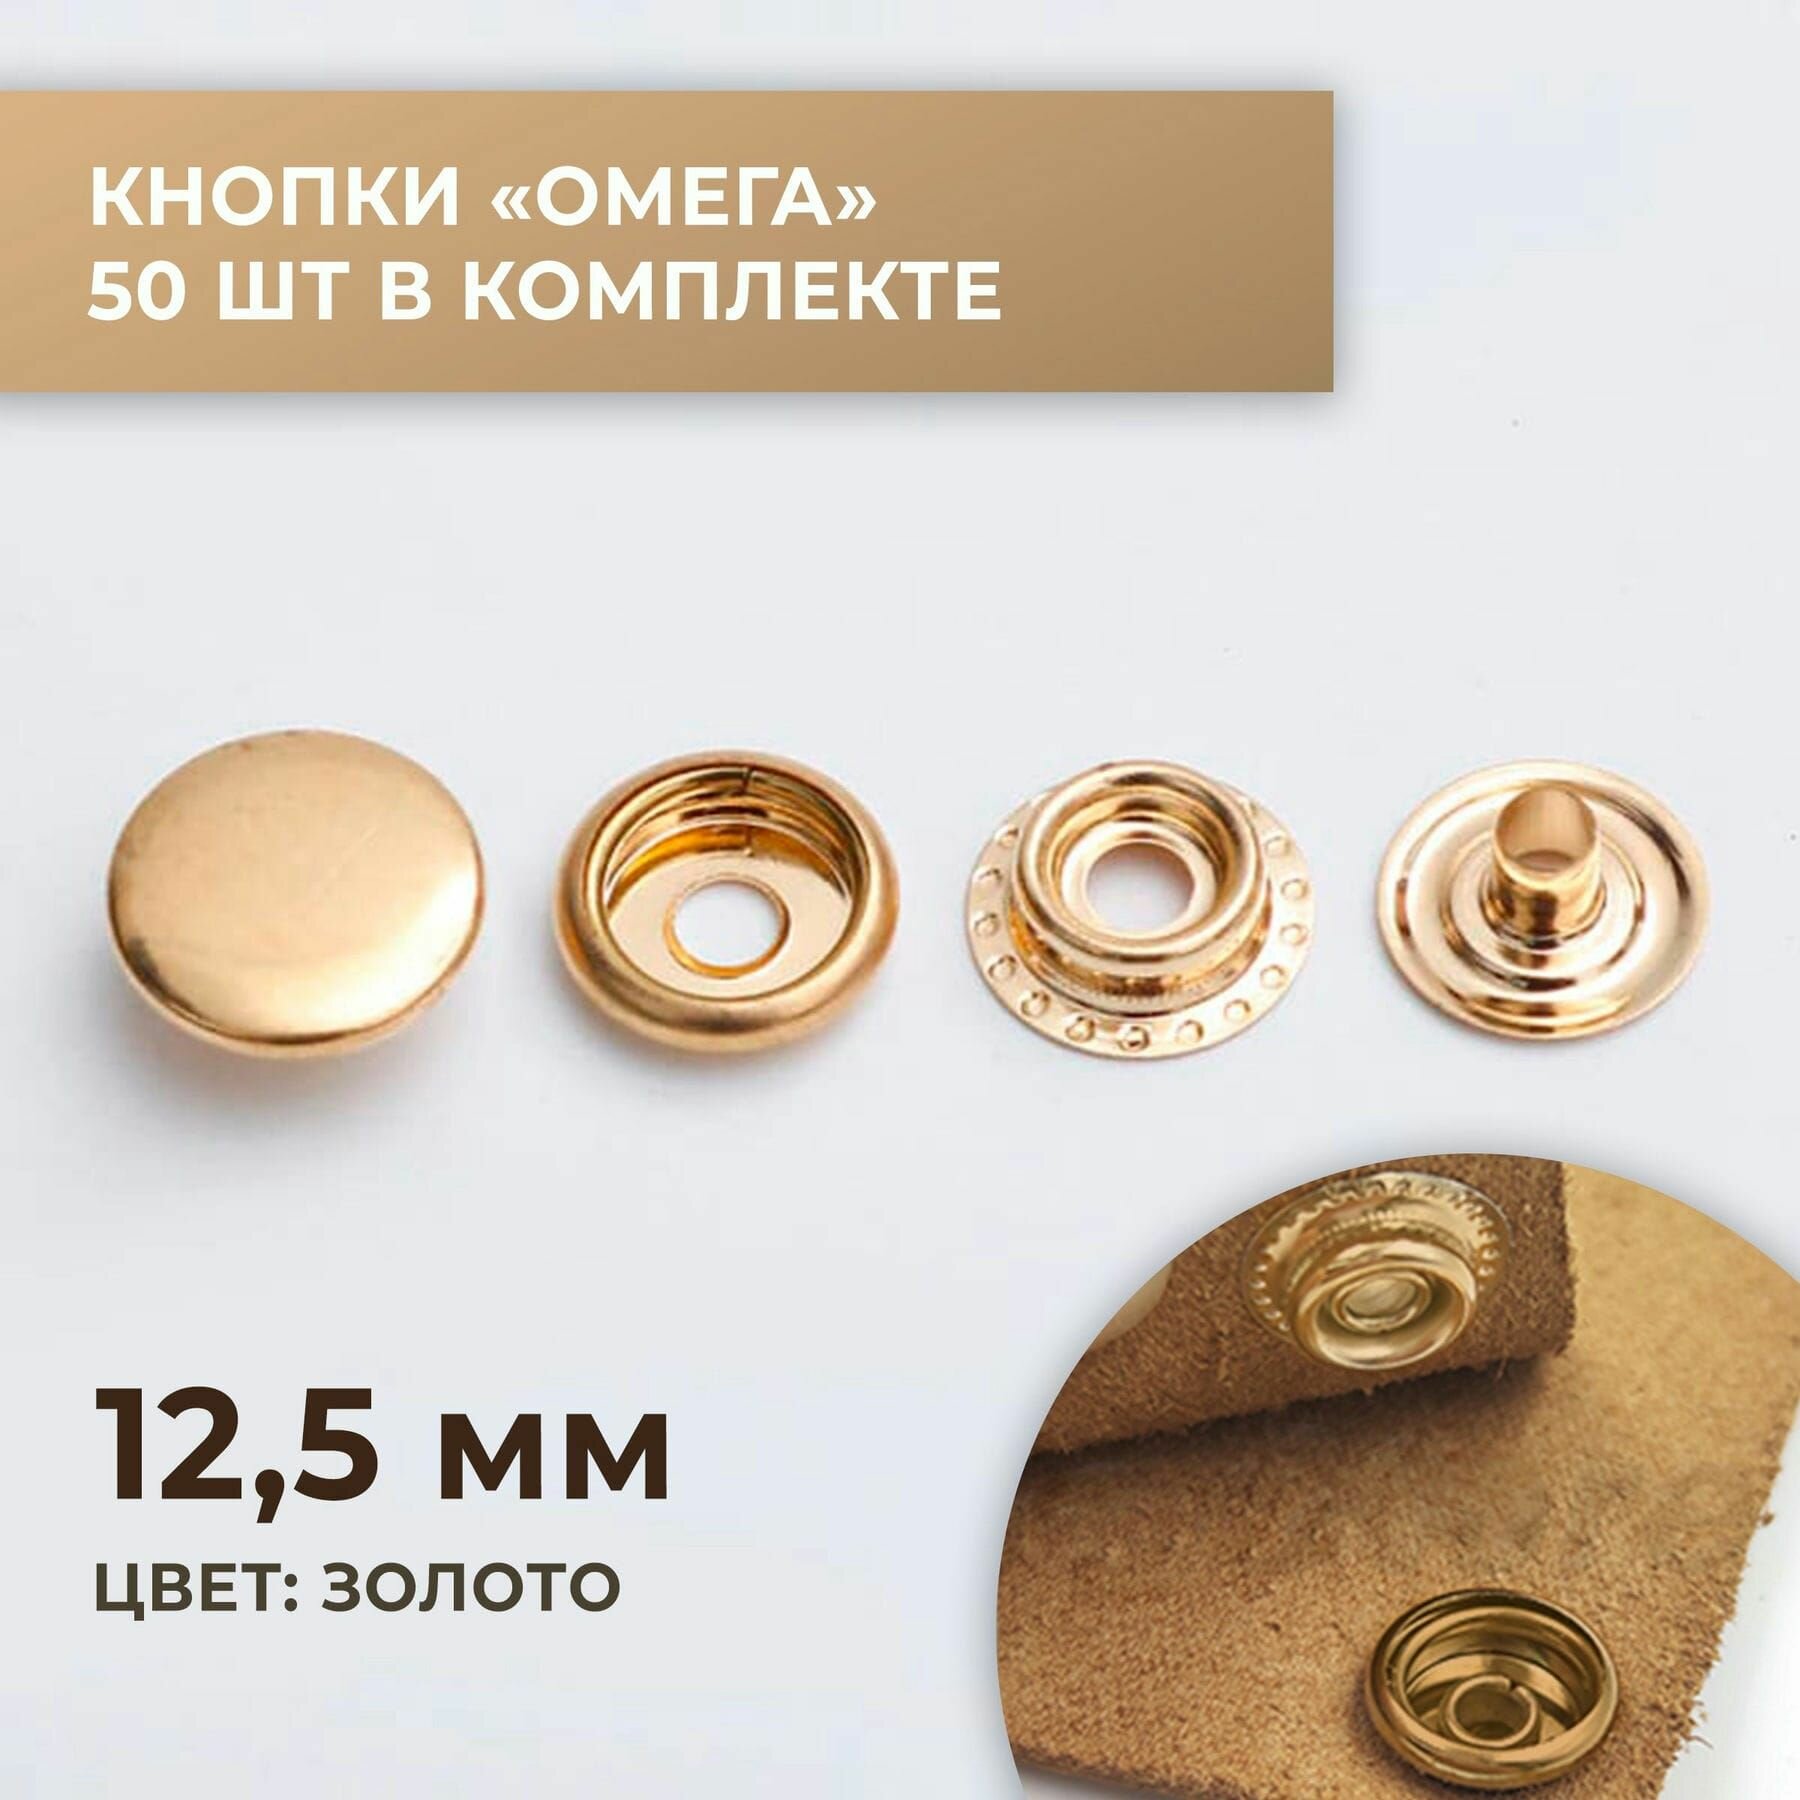 Кнопки "Омега", 12,5 мм, золото, 50 шт